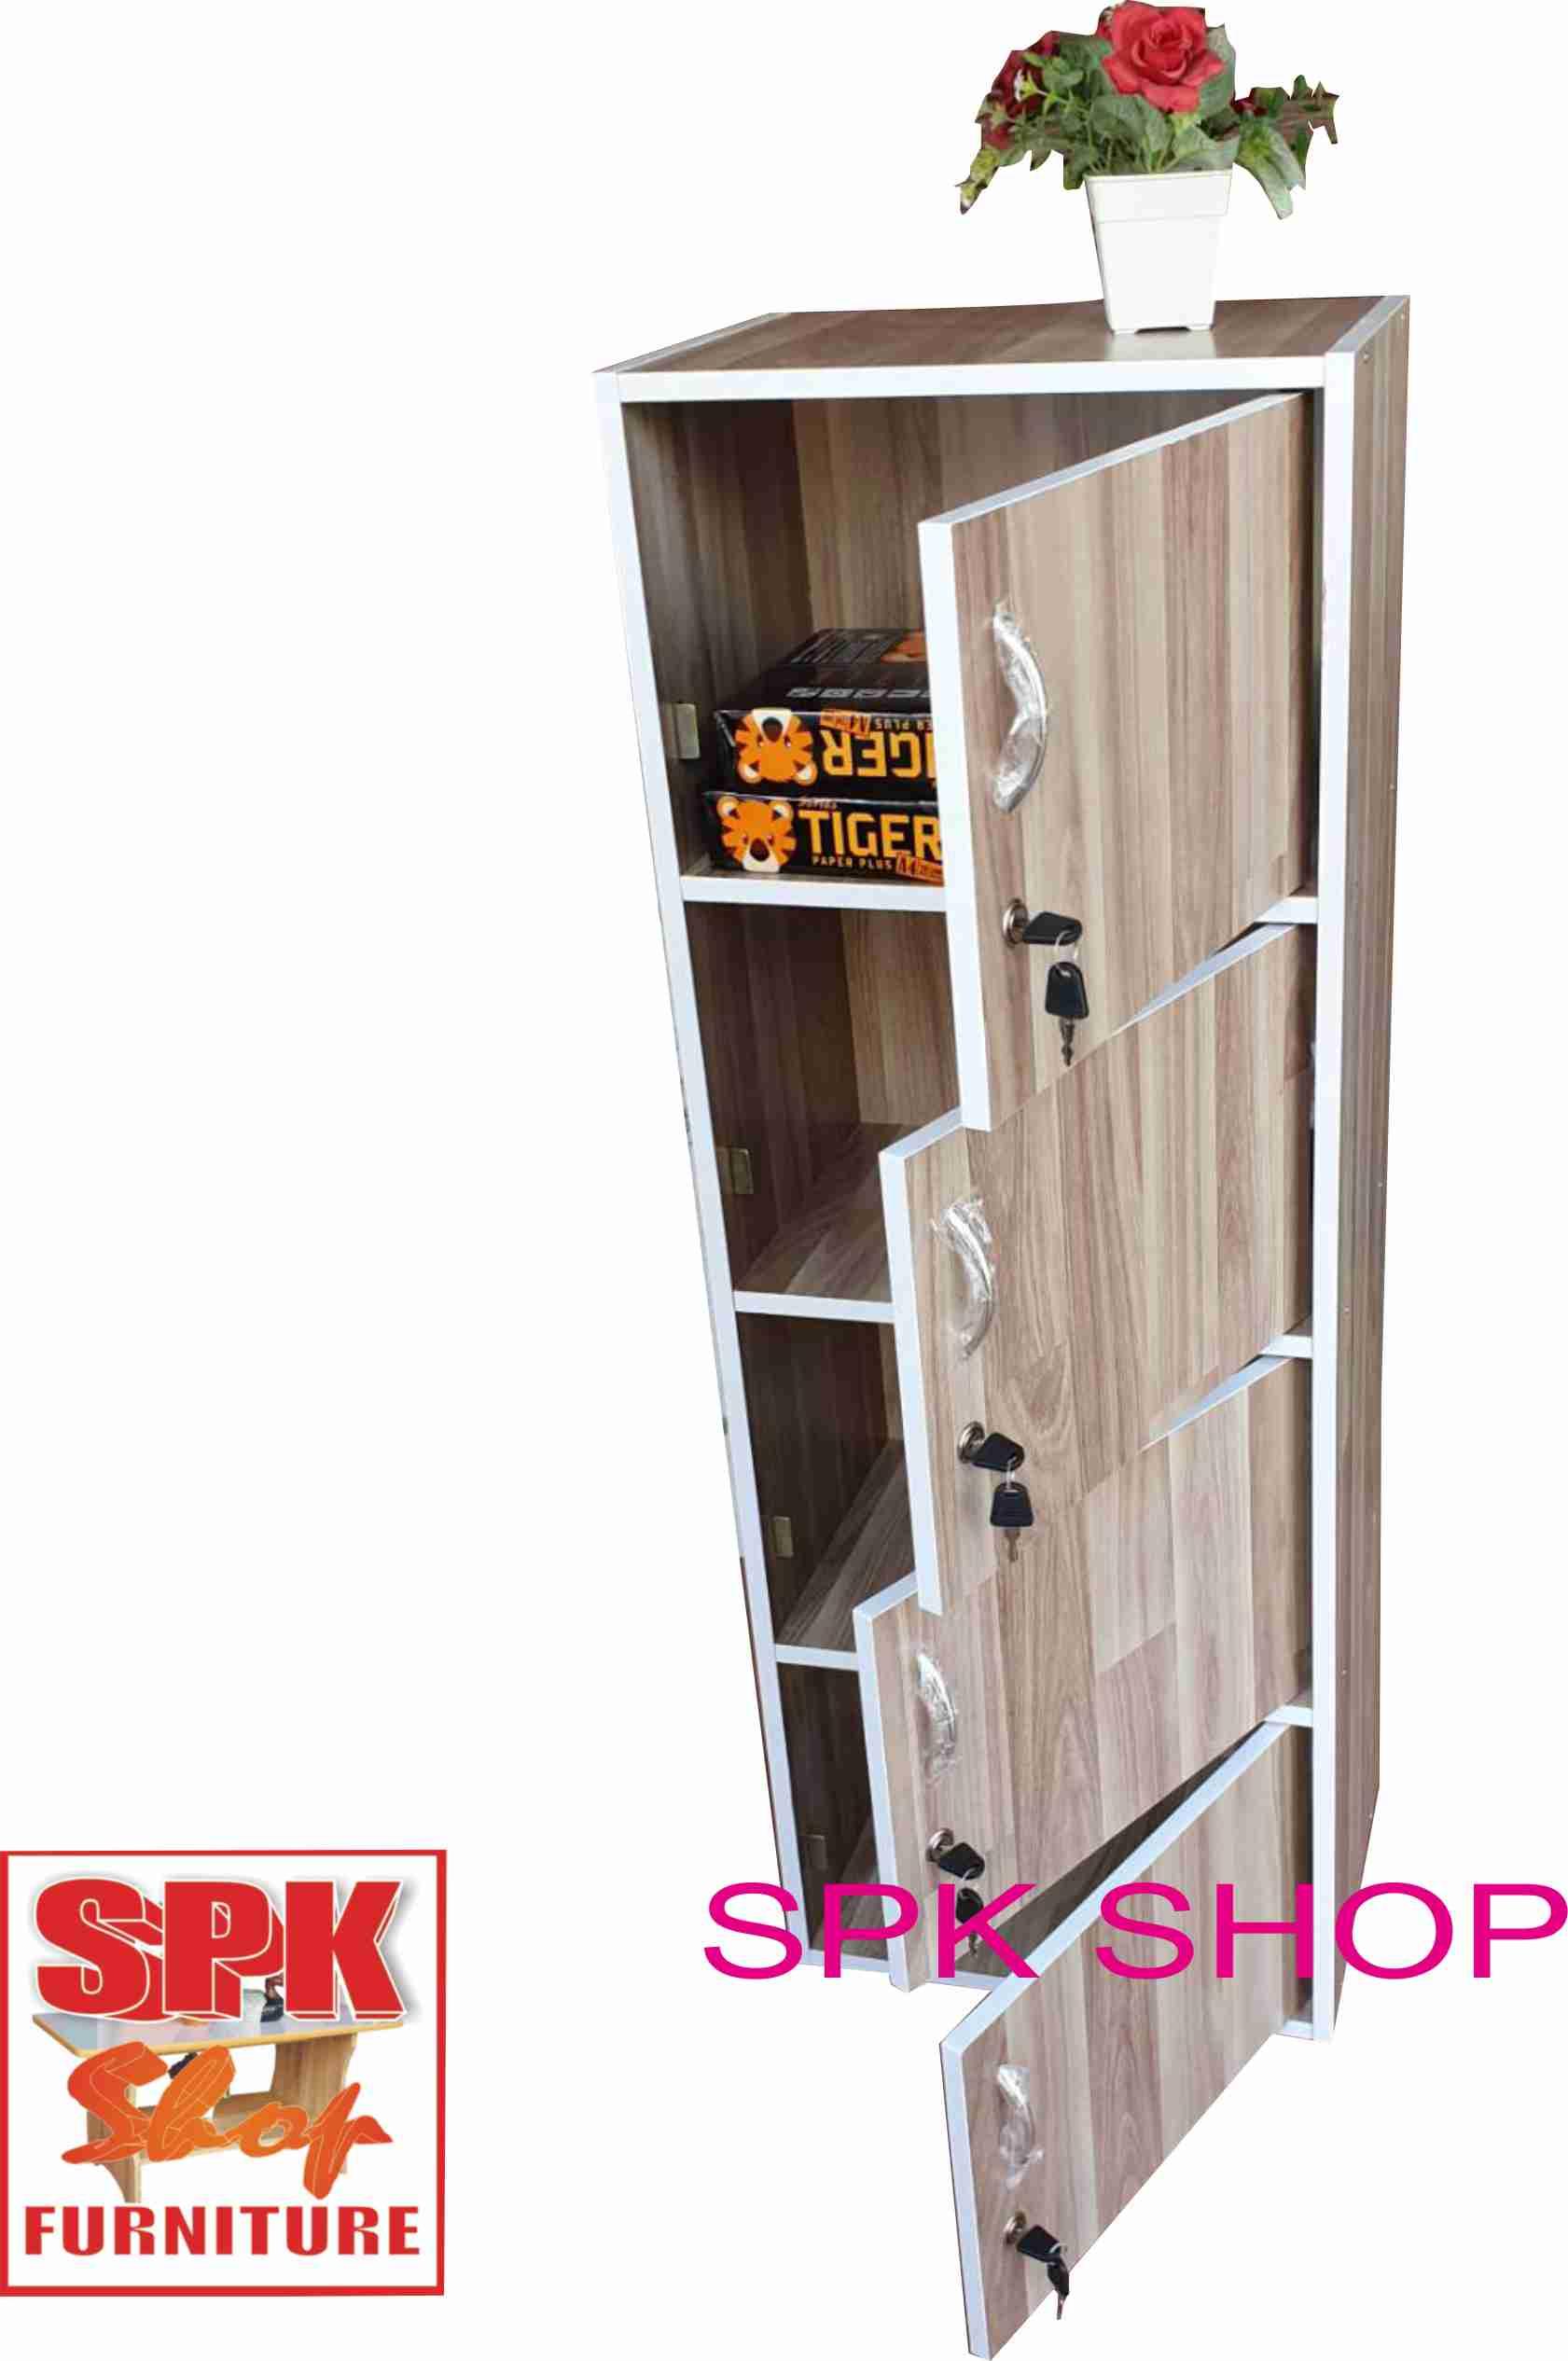 SPK SHOP ตู้ล๊อกเกอร์ ชั้นไม้ ตู้ไม้ 4 ชั้น เอนกประสงค์ รุ่น Box1-4 มีกุญแจพร้อมบานเปิดปิด กว้าง 42 ลึก 30 สูง 116 ซม.( สีลายลายไม้จ้อย)